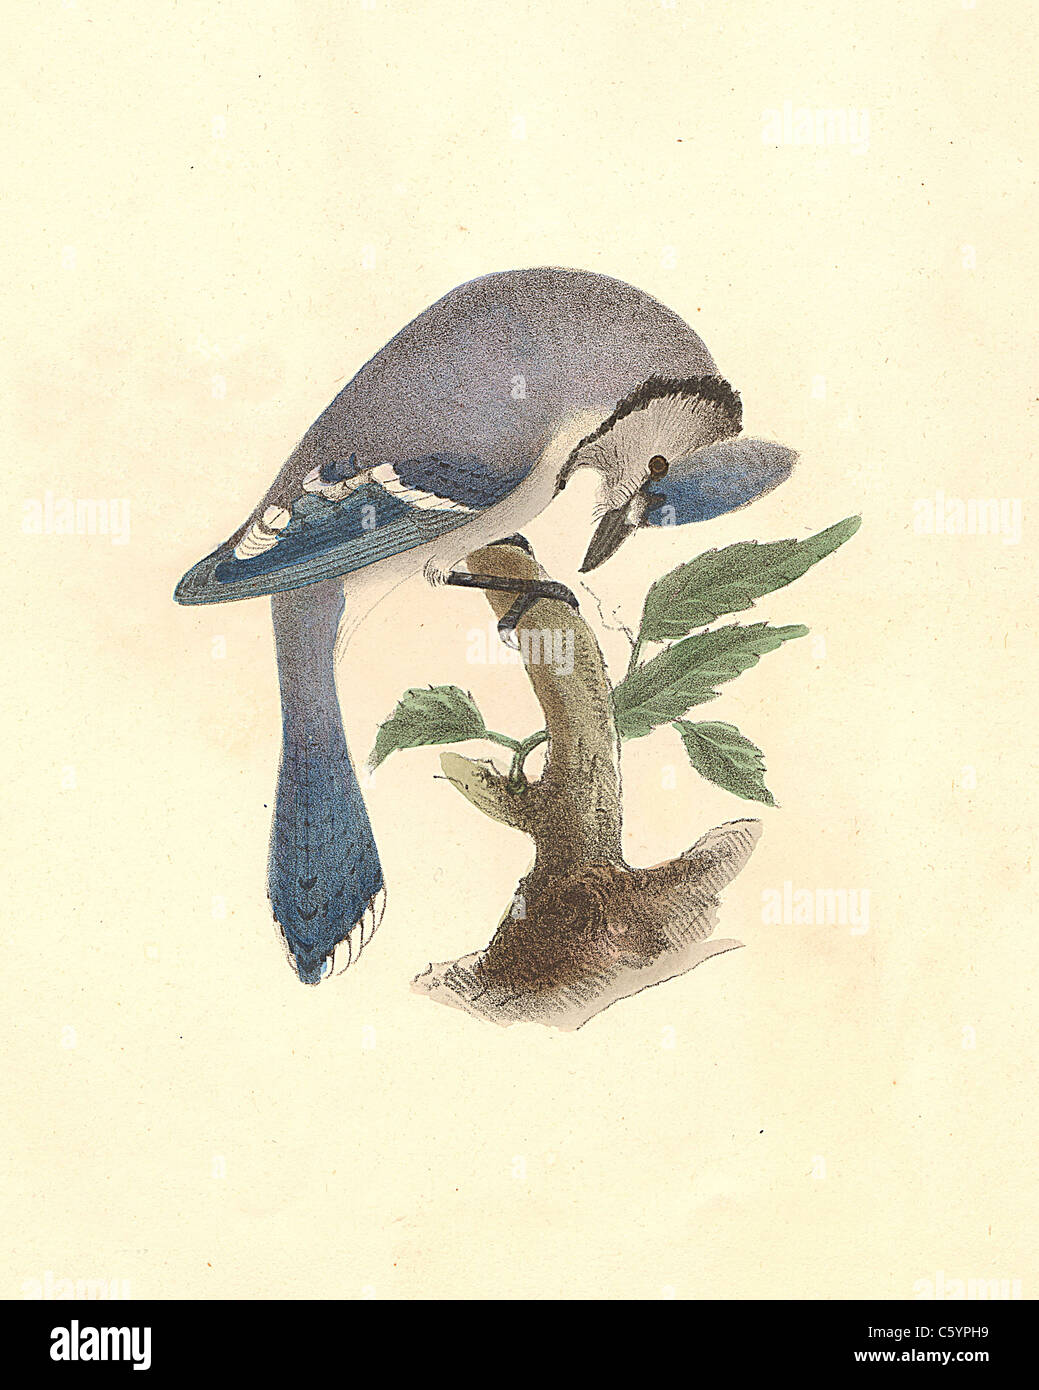 Le Geai bleu (Garrulus cristatus, Cyanocitta cristata) vintage oiseau lithographie de James De Kay de zoologie de New York, New York la faune Oiseaux, Partie II Banque D'Images